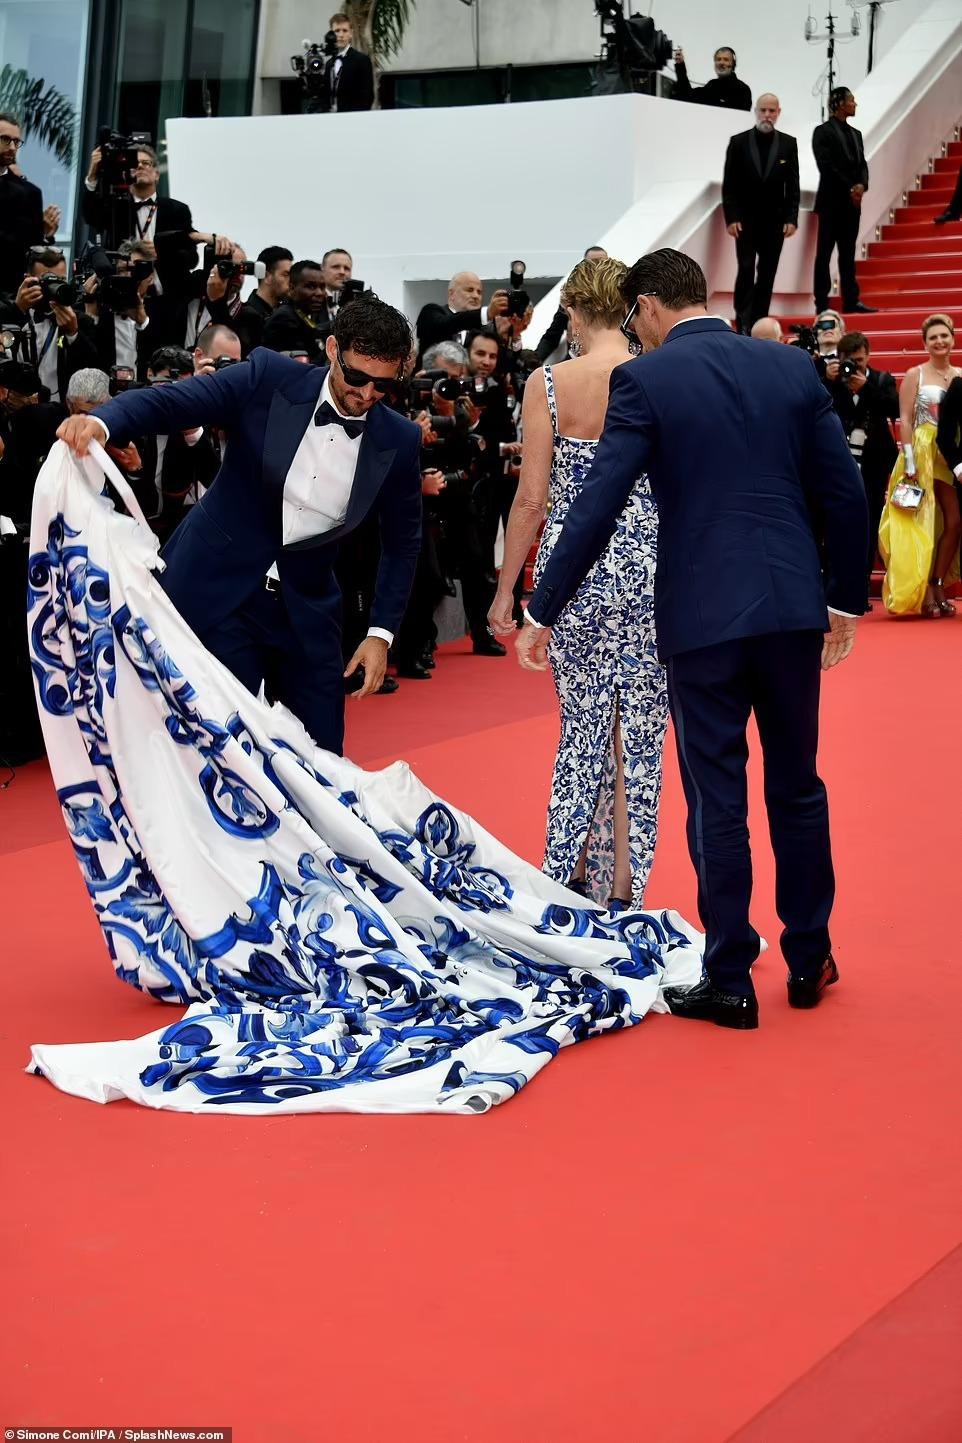 Cannes ngày 6: Sharon Stone cởi váy trên thảm đỏ, hai người đẹp gặp sự cố 'lộ hàng' kém duyên - Ảnh 2.